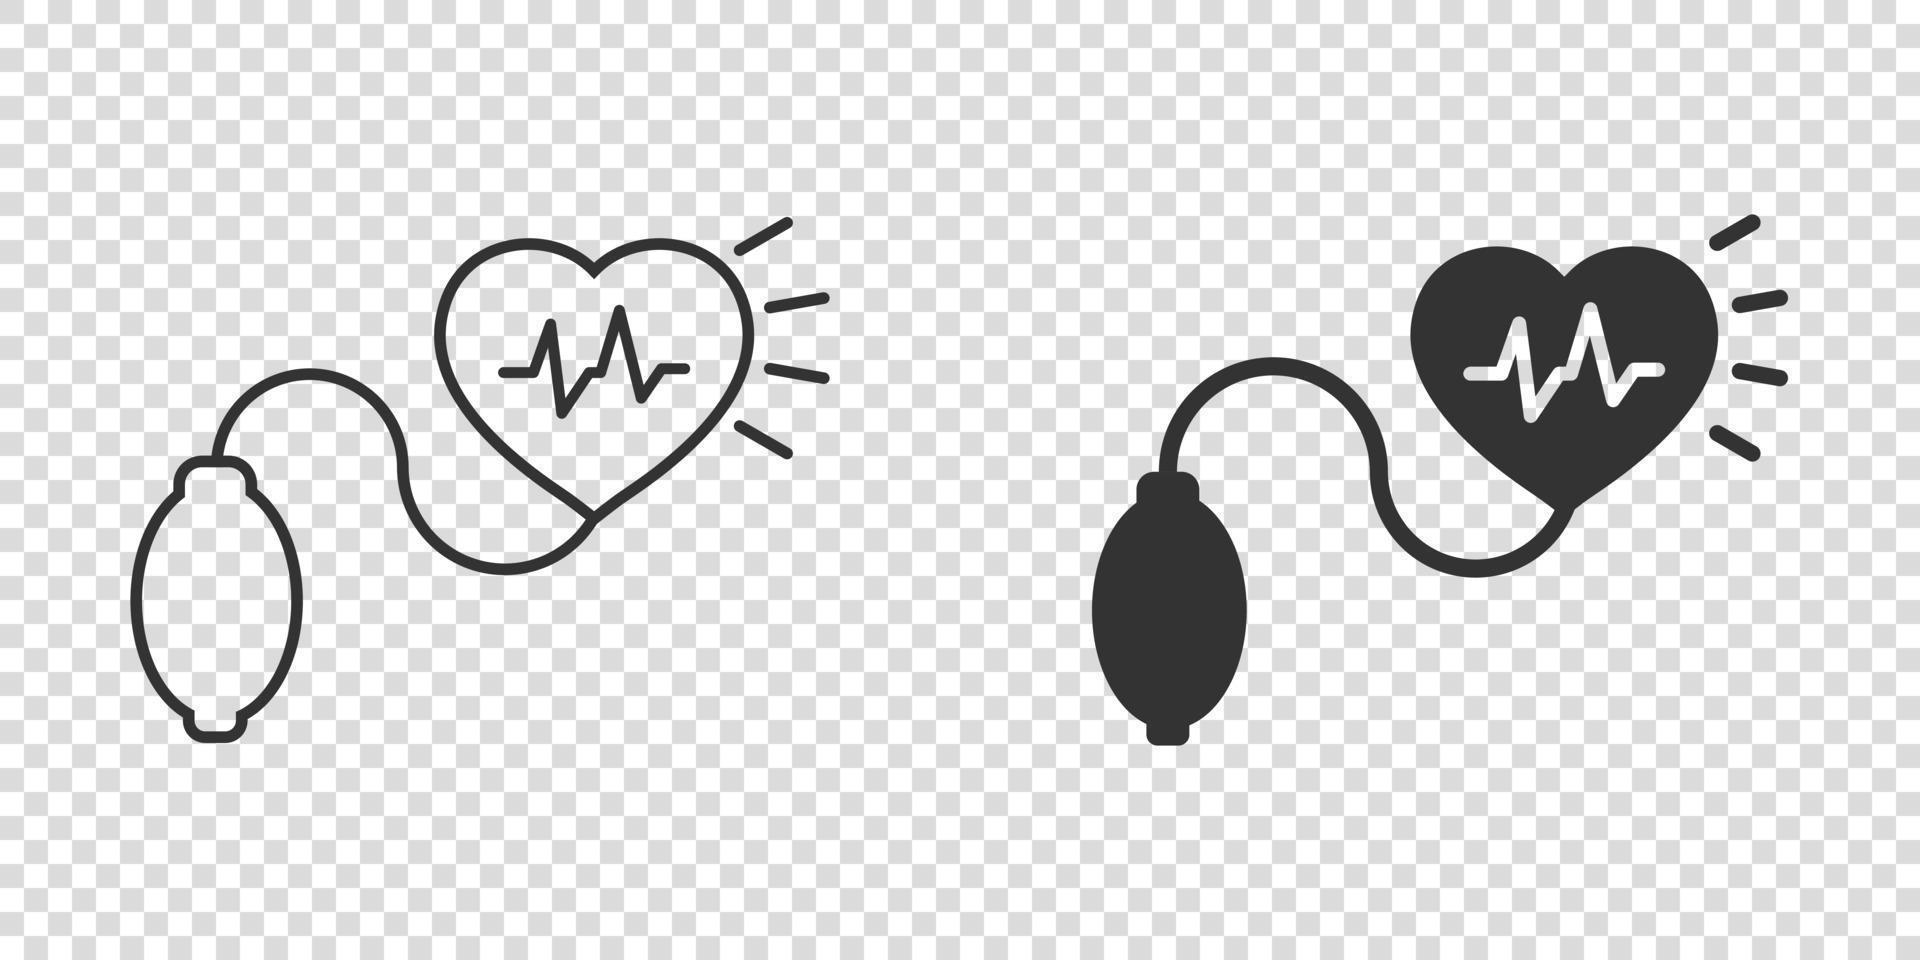 arterioso sangue pressione icona nel piatto stile. battito cardiaco tenere sotto controllo vettore illustrazione su isolato sfondo. pulse diagnosi cartello attività commerciale concetto.